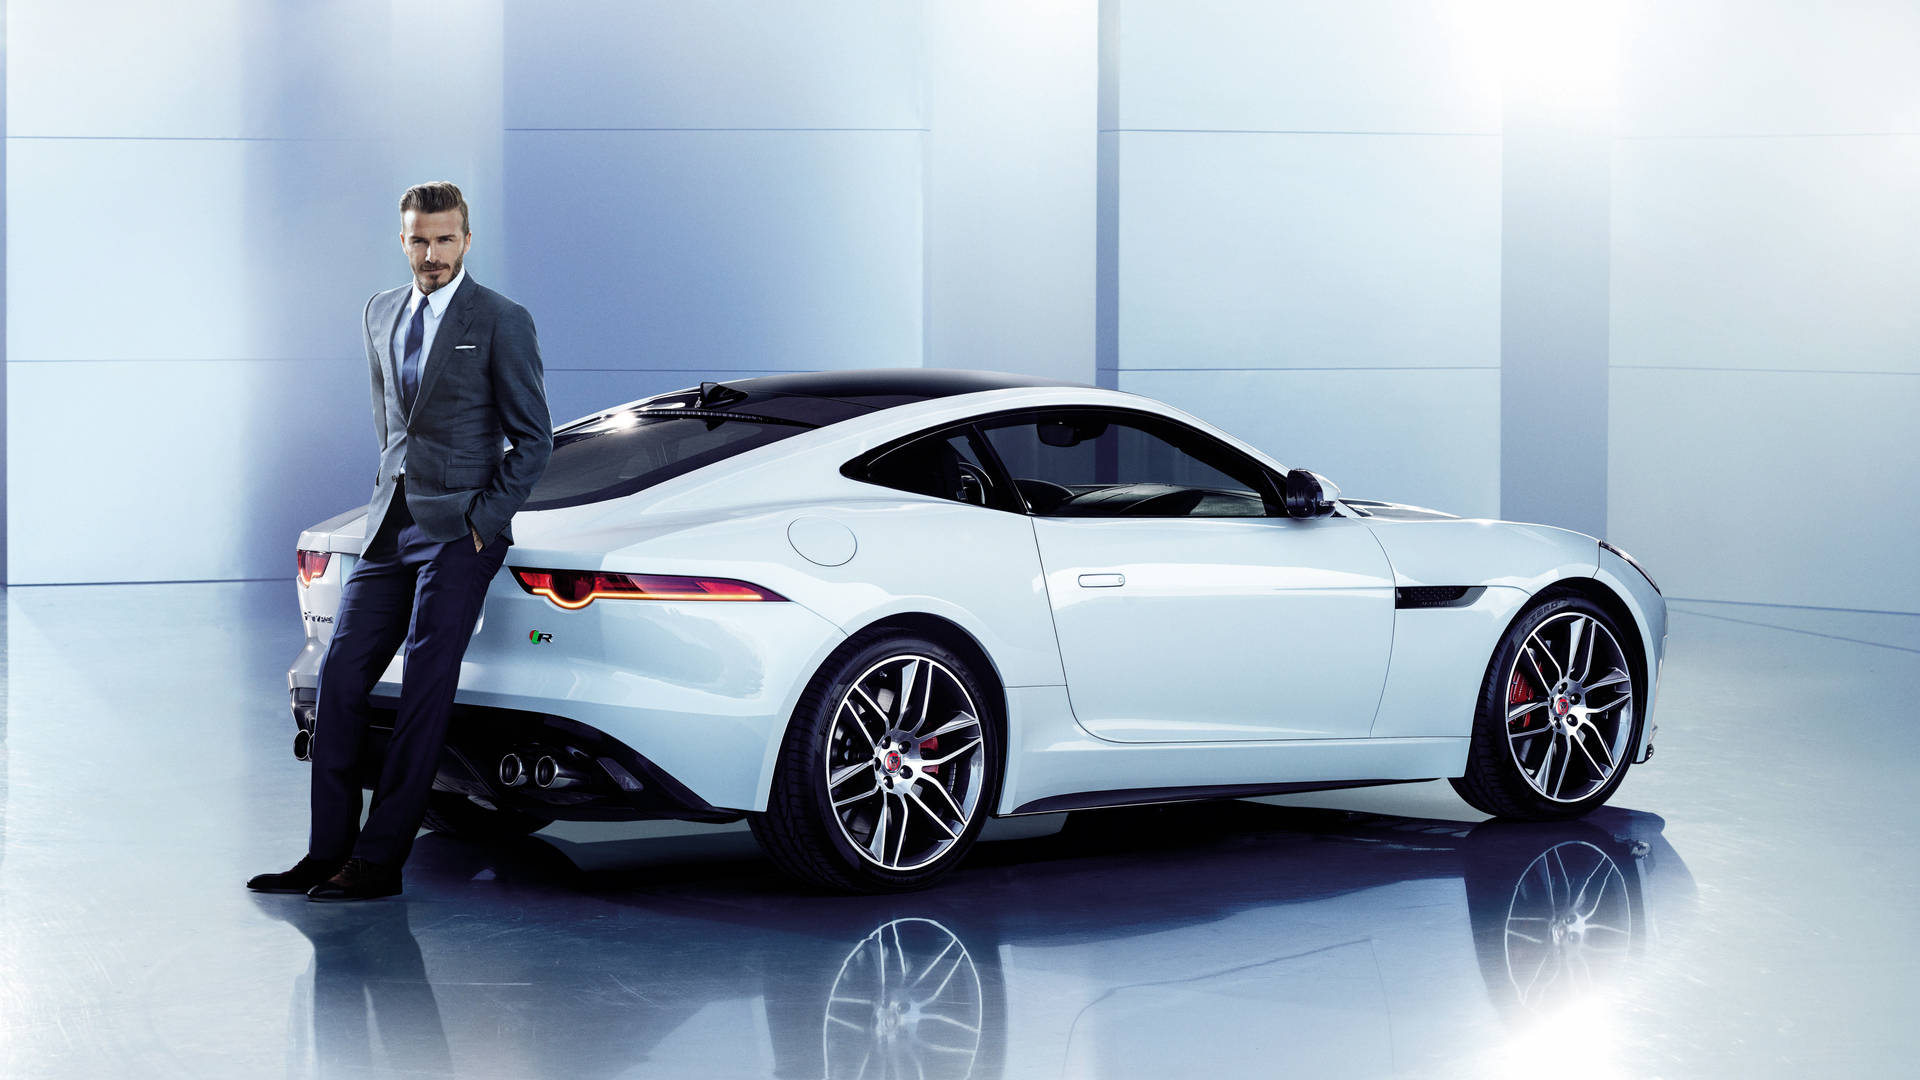 David Beckham poses with a sleek Jaguar Wallpaper